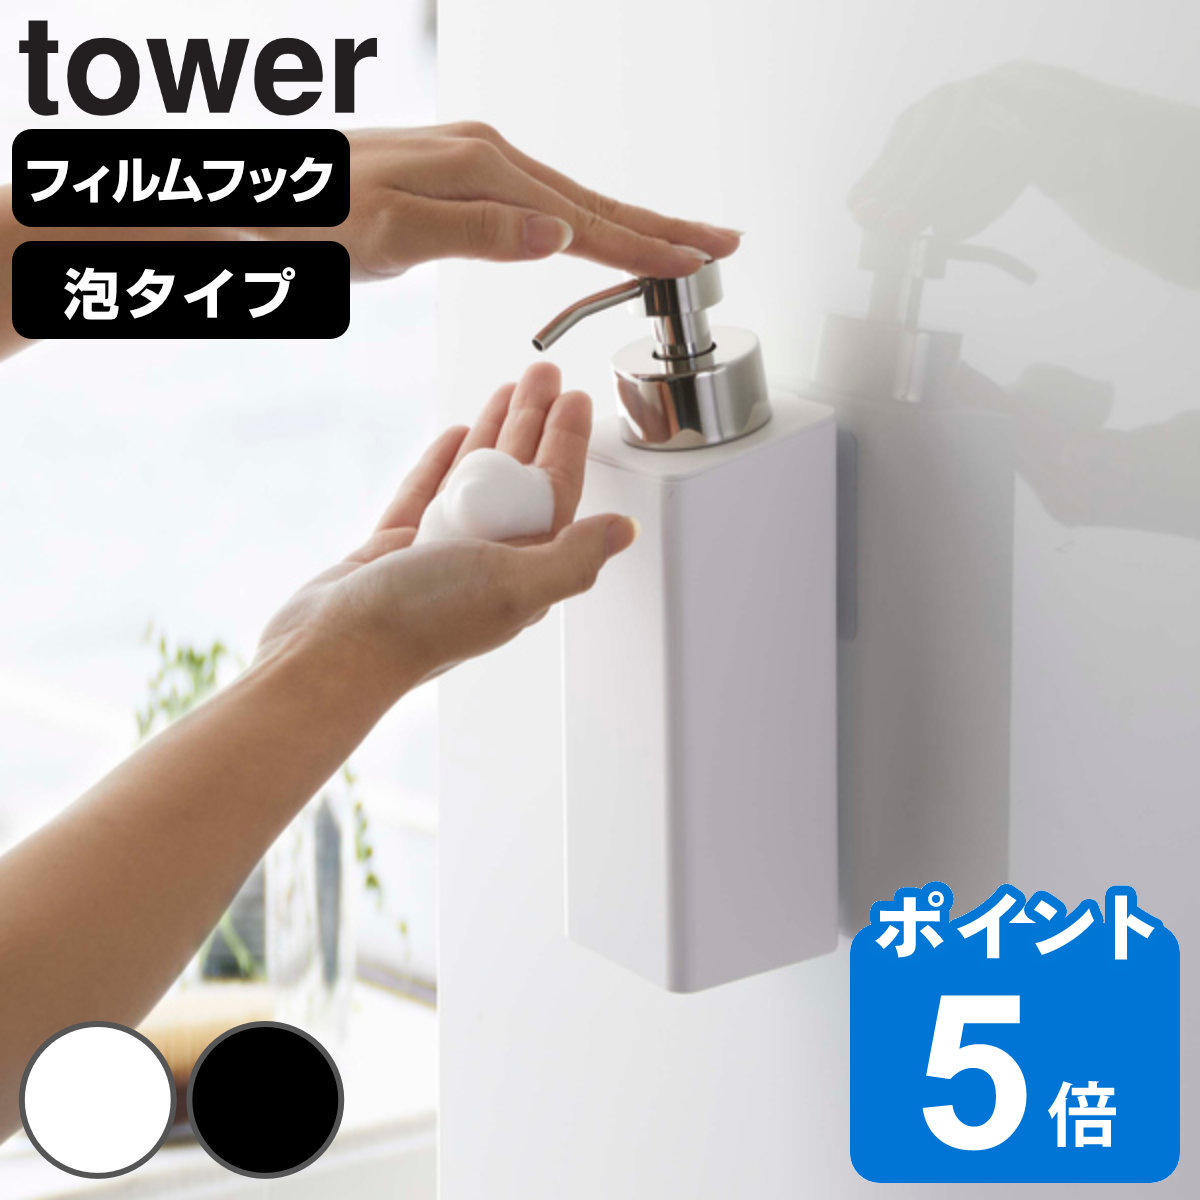 山崎実業 tower フィルムフックツーウェイディスペンサー タワー 泡タイプ